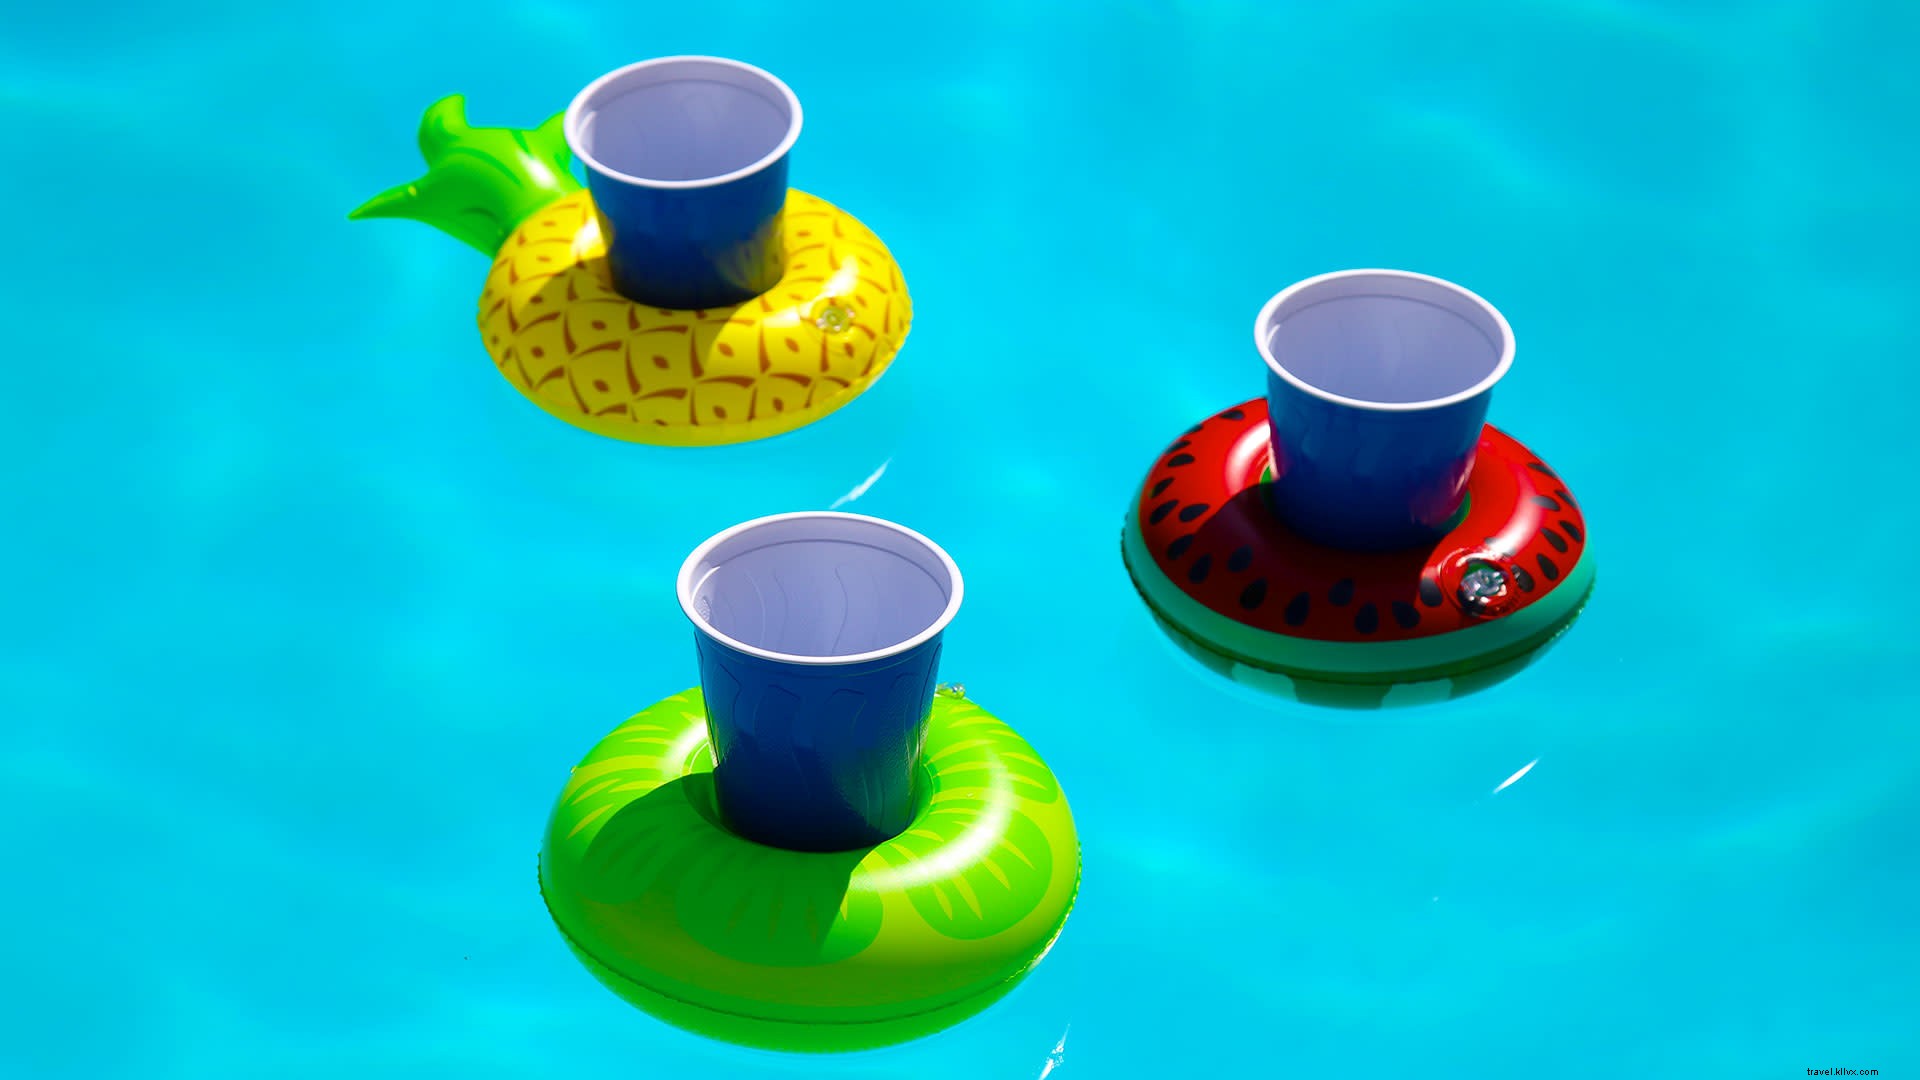 10 accesorios imprescindibles para fiestas en la piscina para el verano 